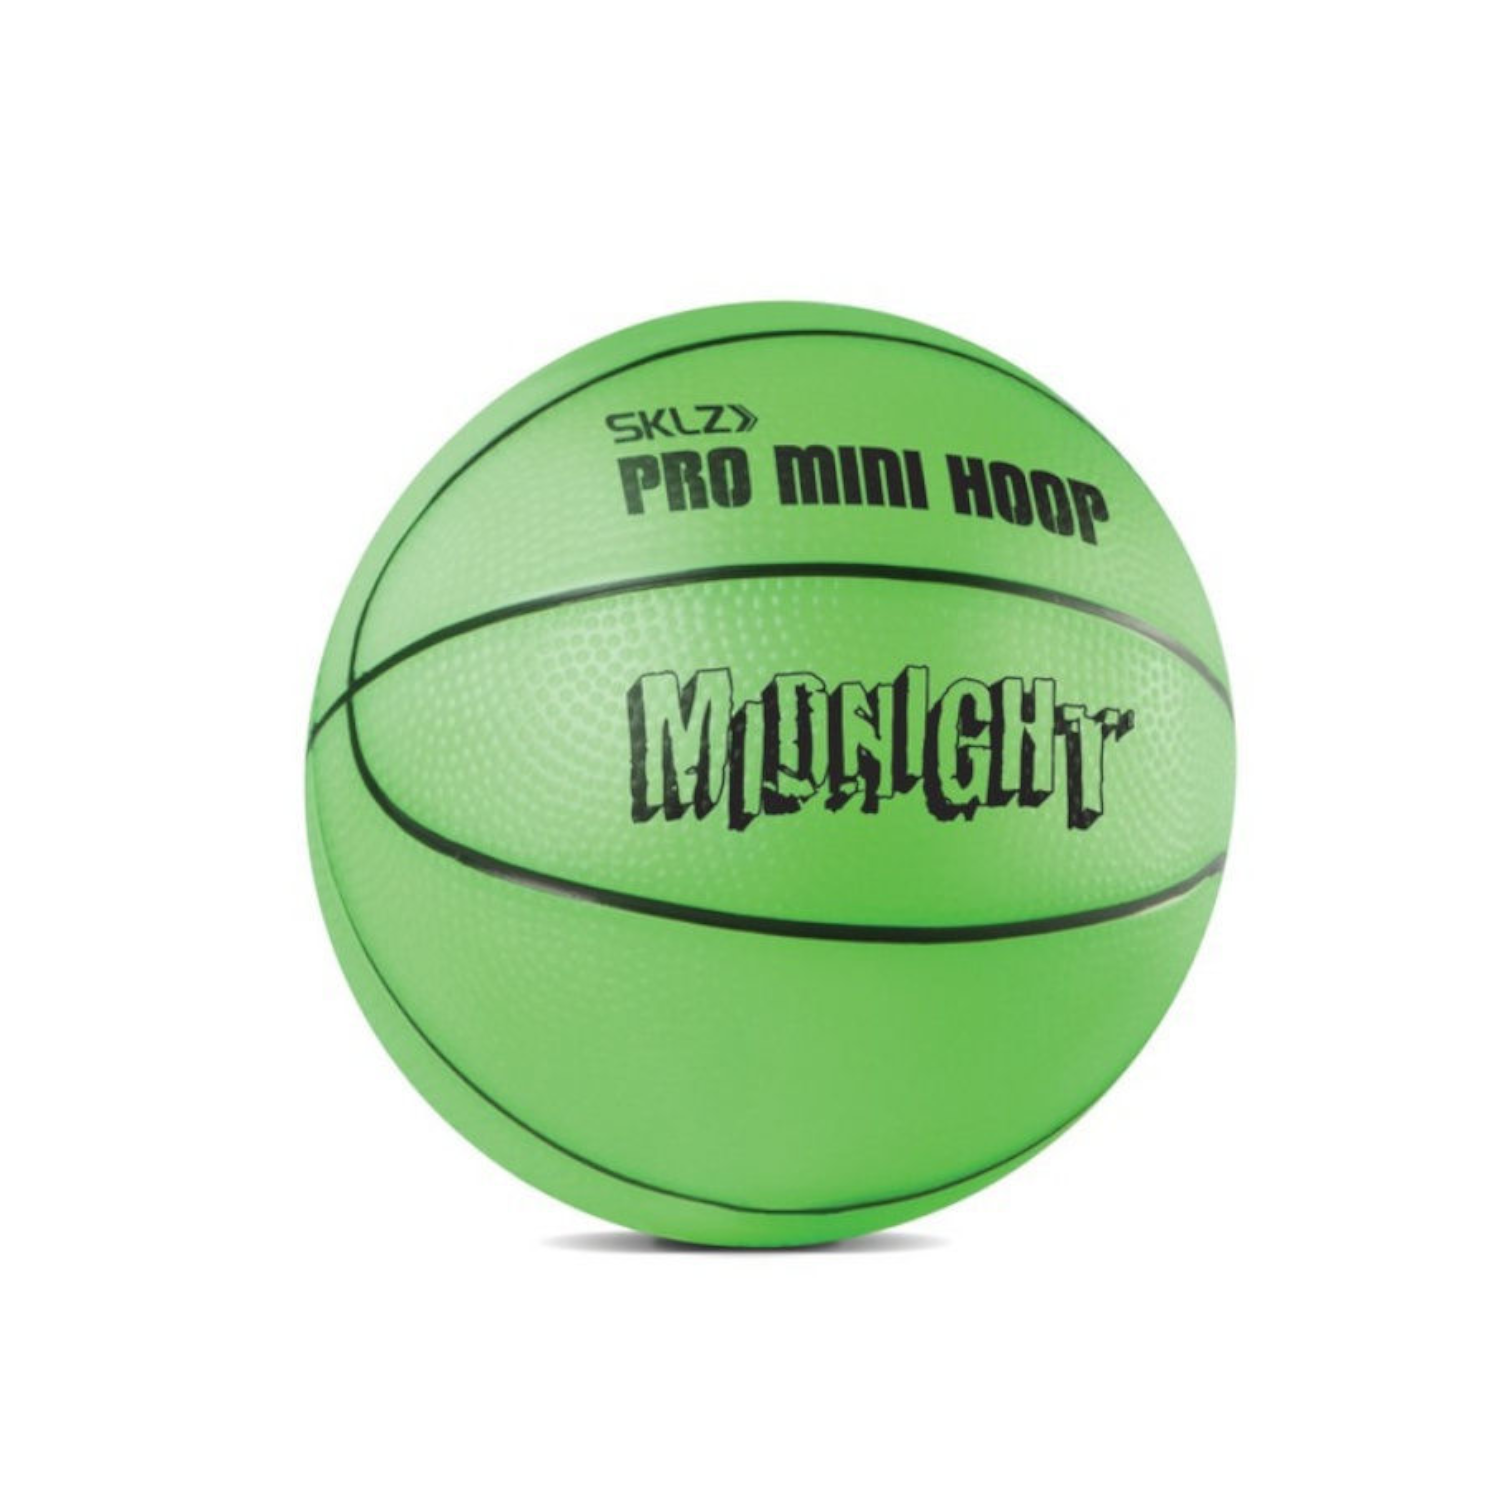 Игровой набор SKLZ баскетбольный Pro Mini Hoop midnight 45*30 - фото 2